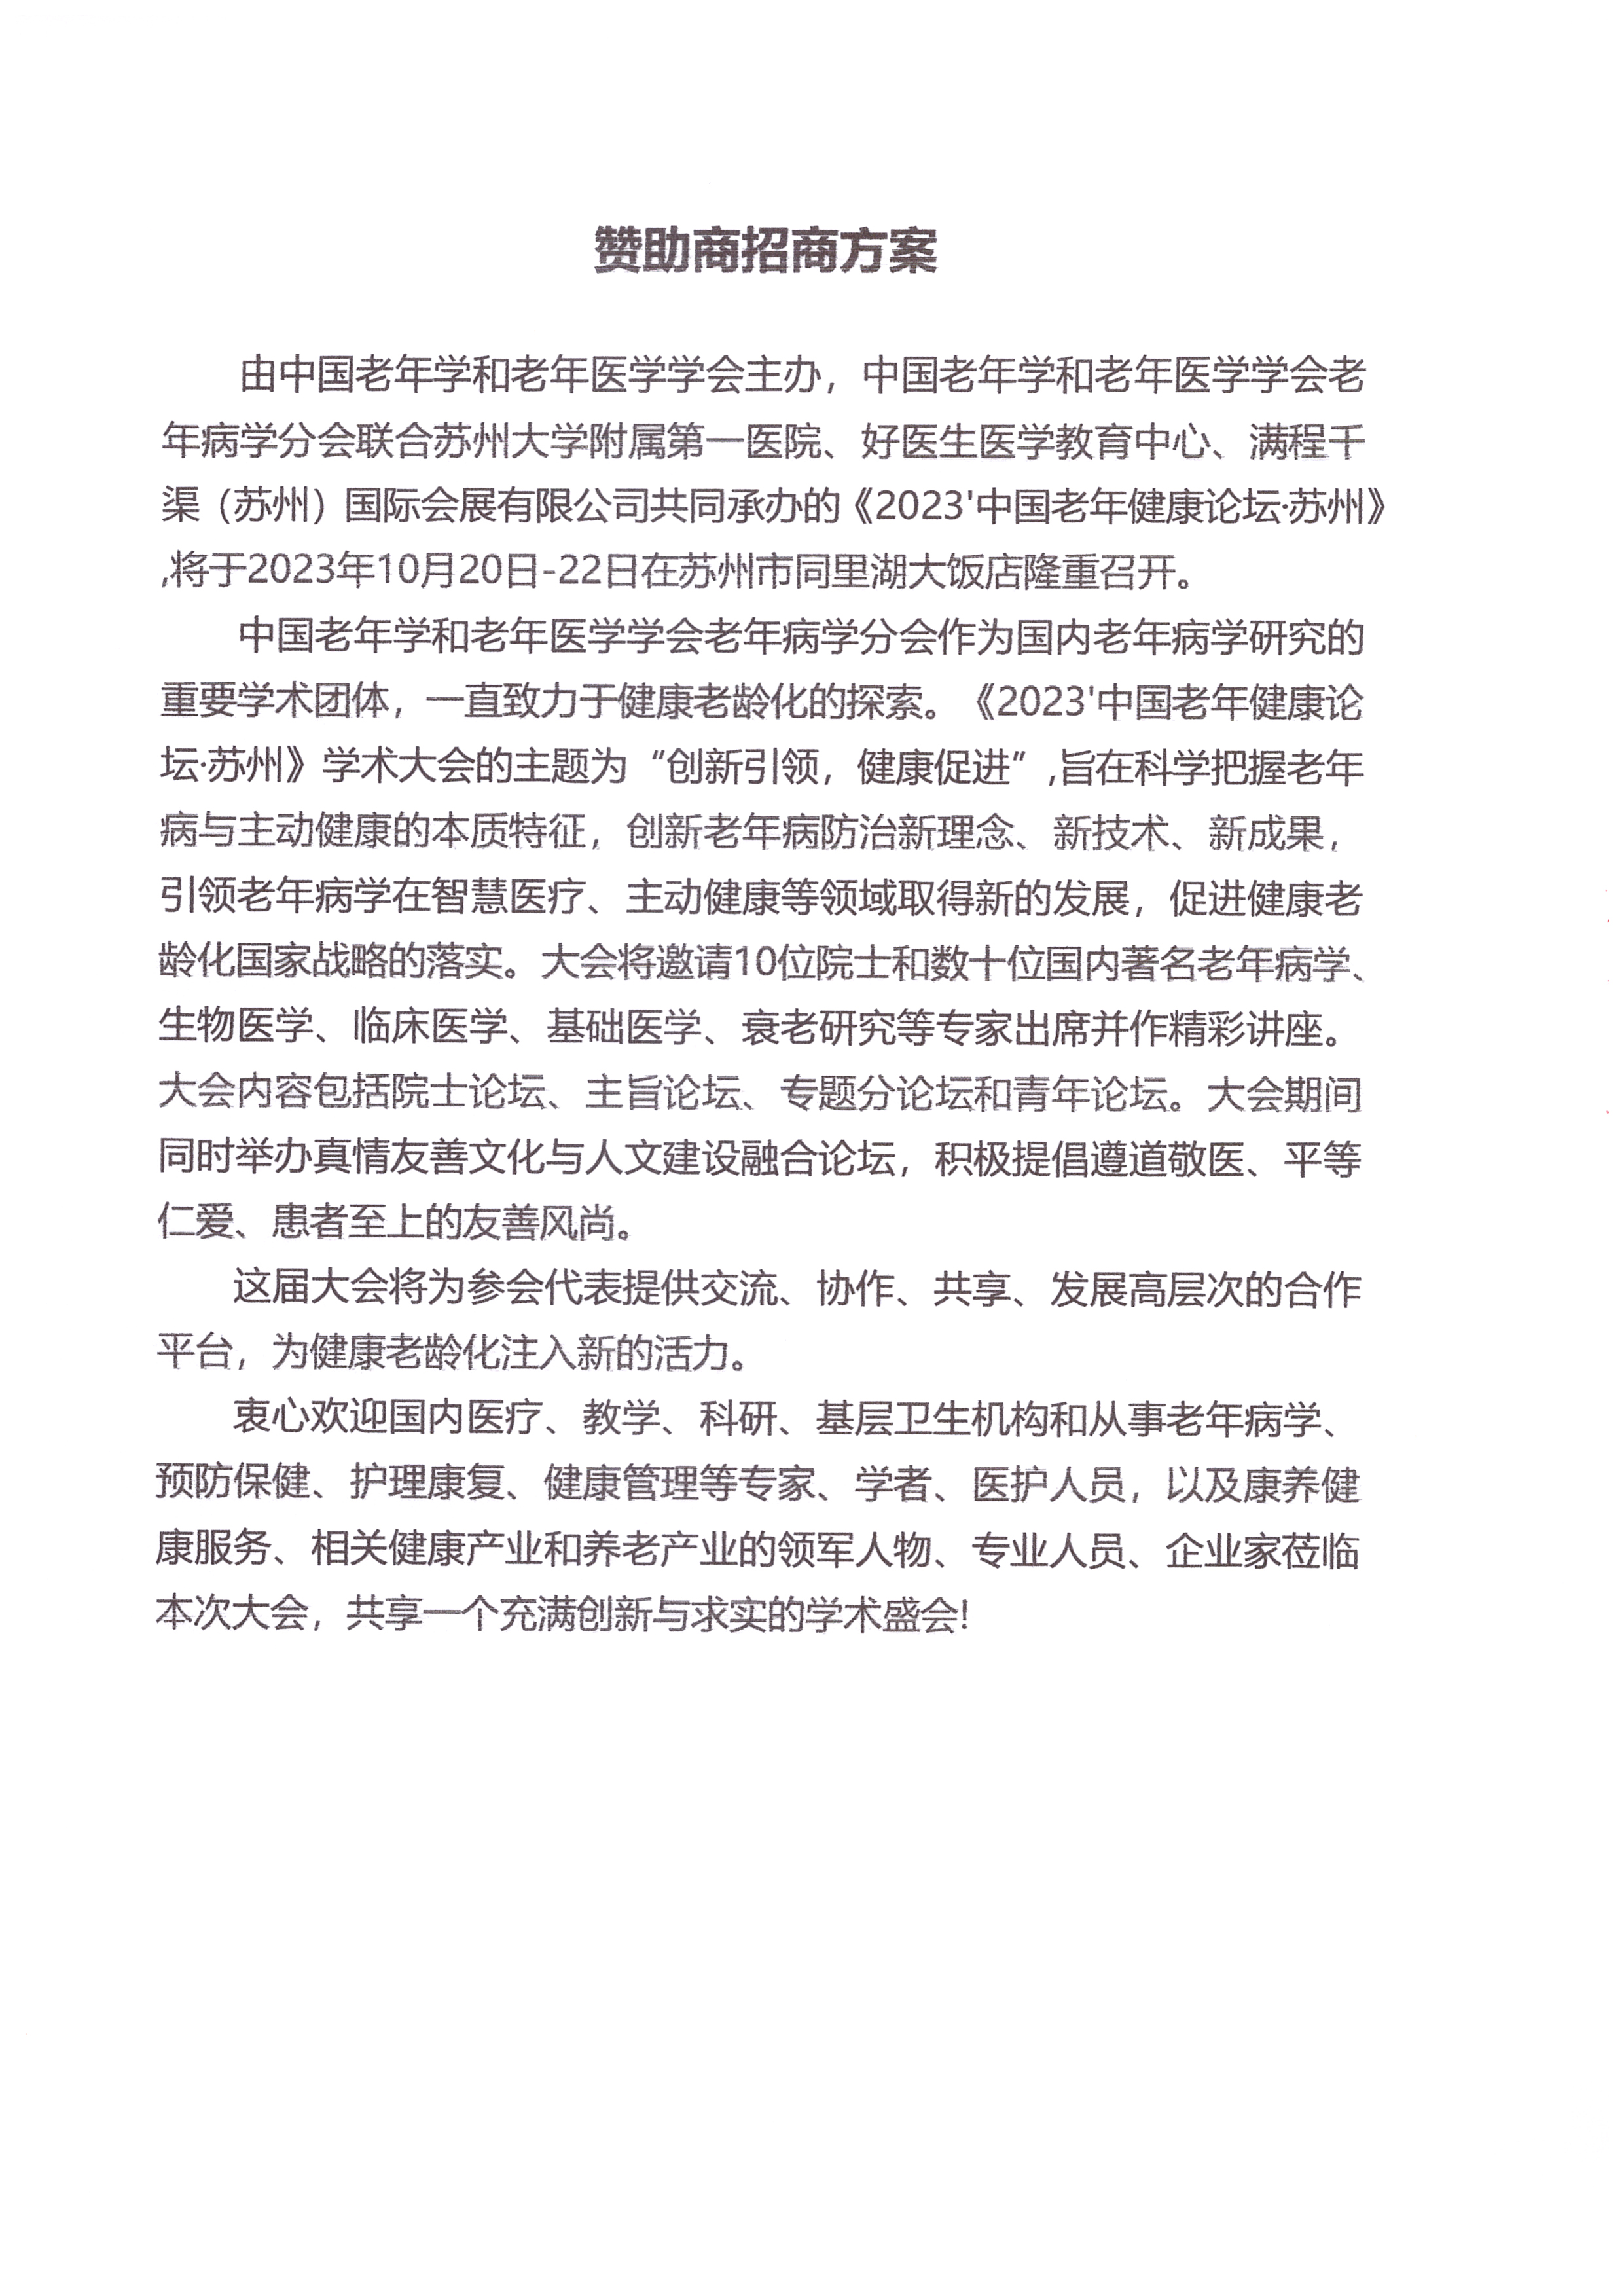 2023'中国老年健康论坛·苏州大会招商方案_页面_02.jpg